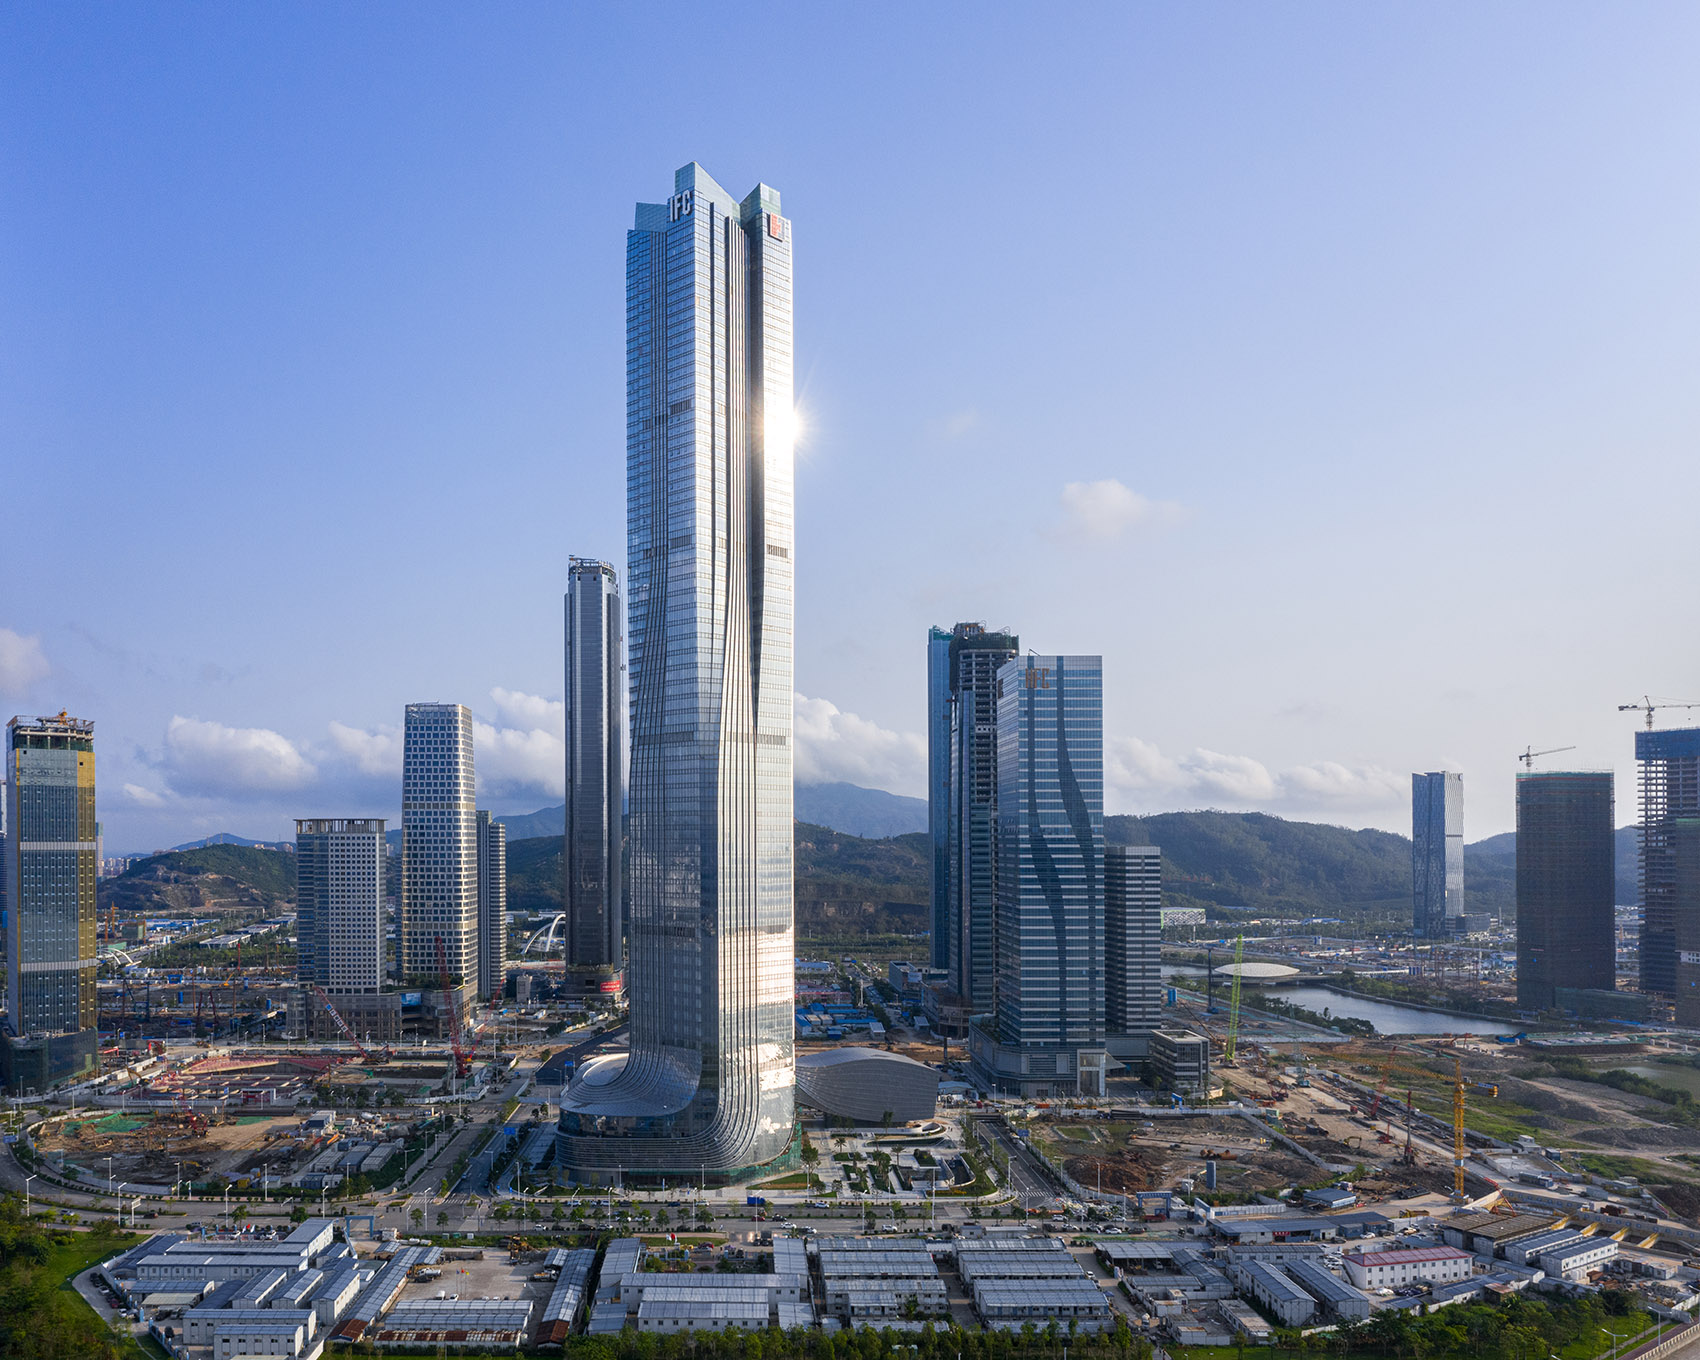 横琴国际金融中心，珠海/珠澳第一高楼，以蛟龙出海打造中国新力量-19